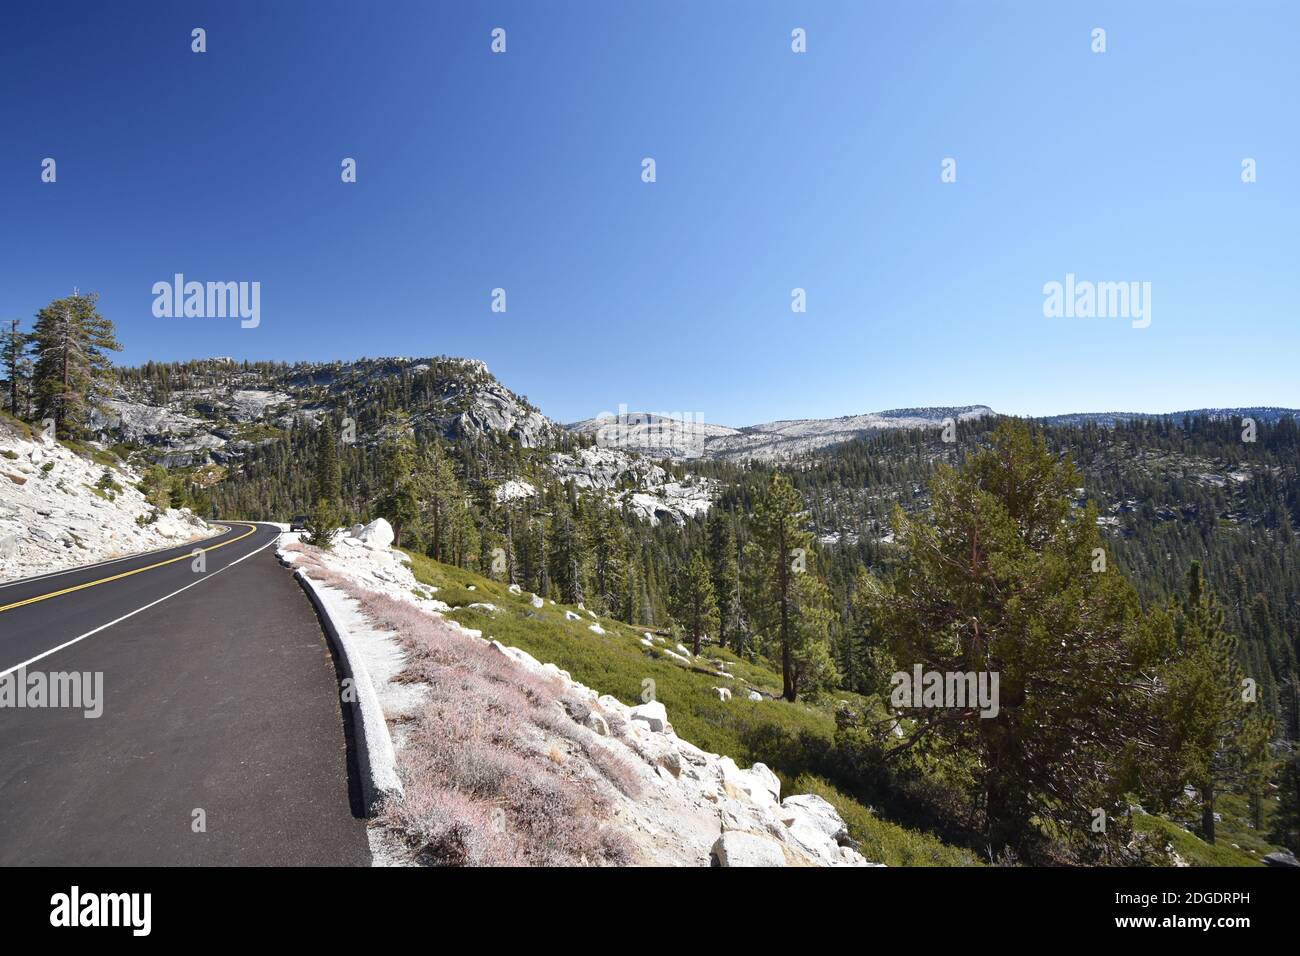 Tioga Pass Road attraversa la catena montuosa della Sierra Nevada nel Parco Nazionale di Yosemite, California. Cielo blu chiaro, scogliere di granito e alberi alpini. Foto Stock